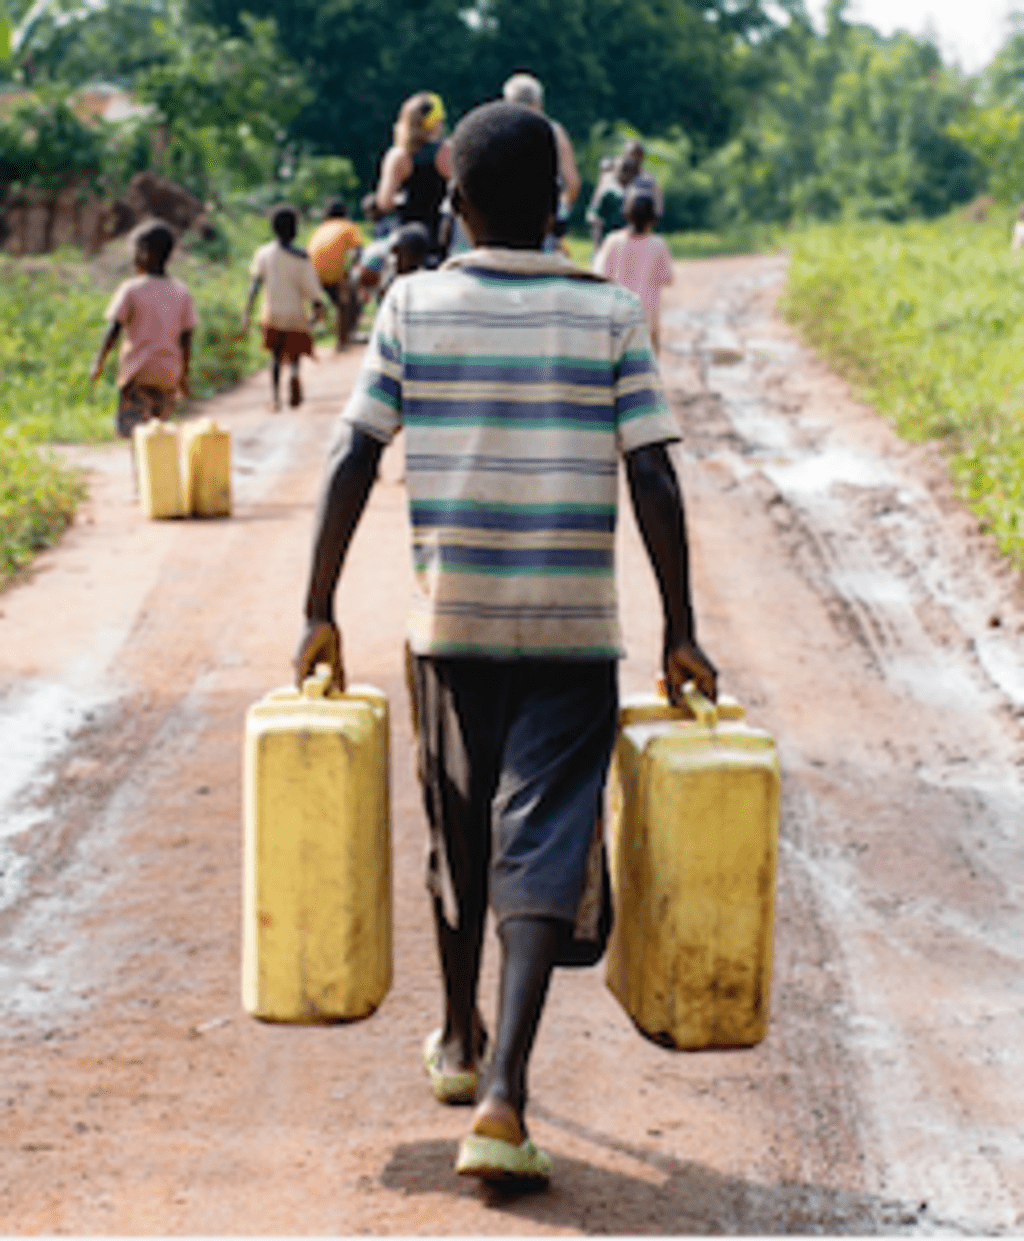 Young Ugandan boy carrying water jugs along dirt pathway